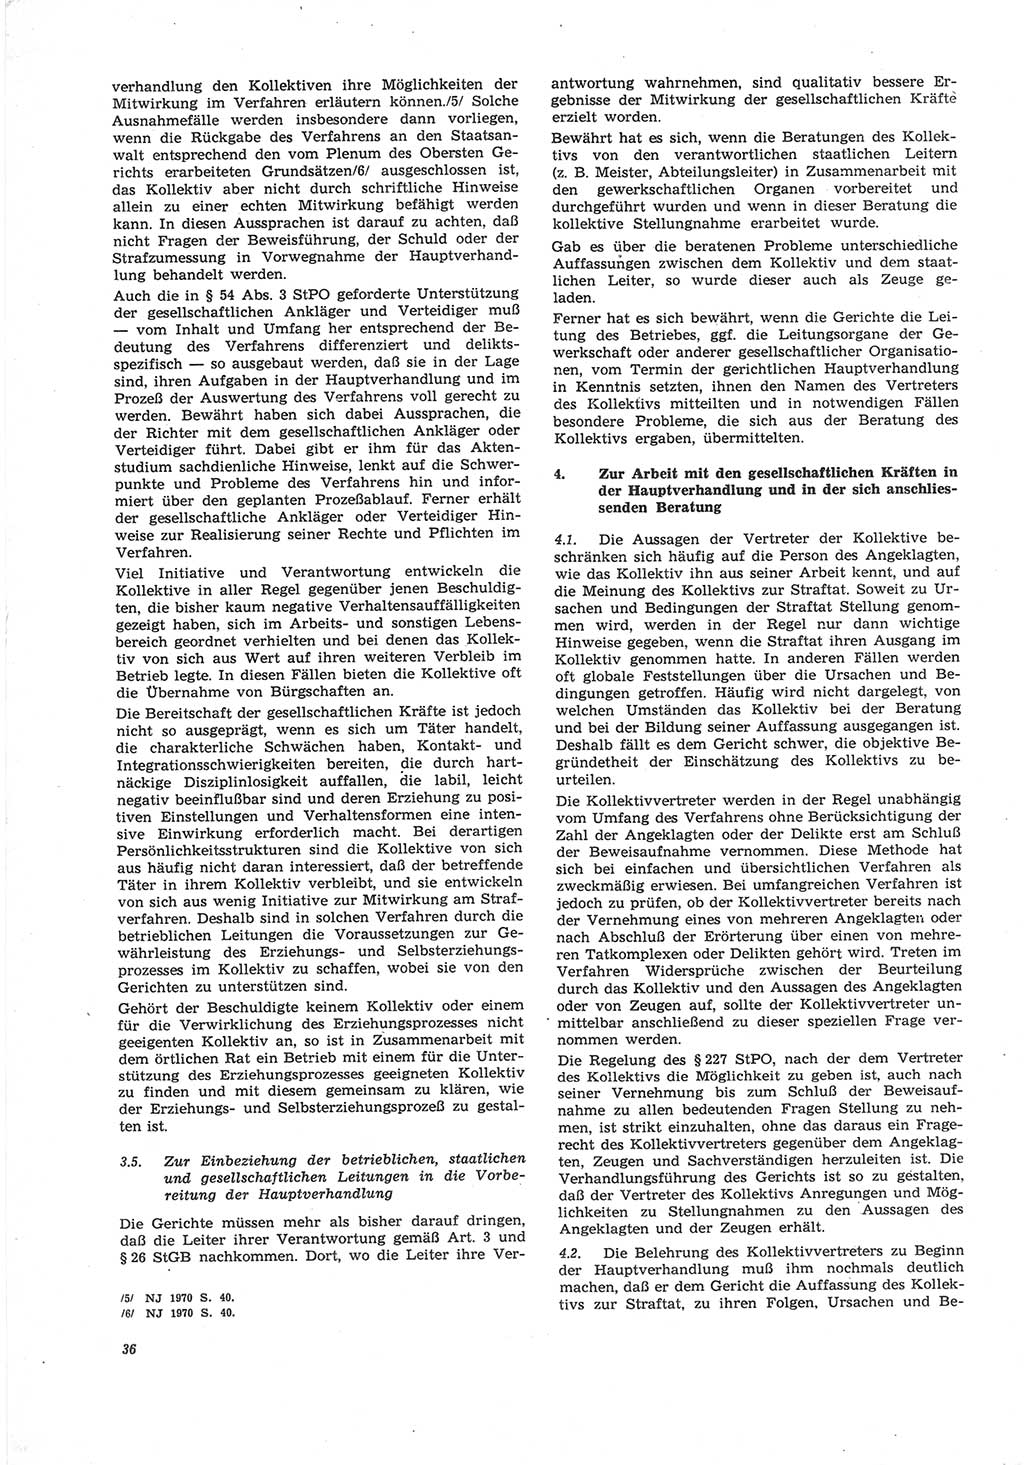 Neue Justiz (NJ), Zeitschrift für Recht und Rechtswissenschaft [Deutsche Demokratische Republik (DDR)], 25. Jahrgang 1971, Seite 36 (NJ DDR 1971, S. 36)